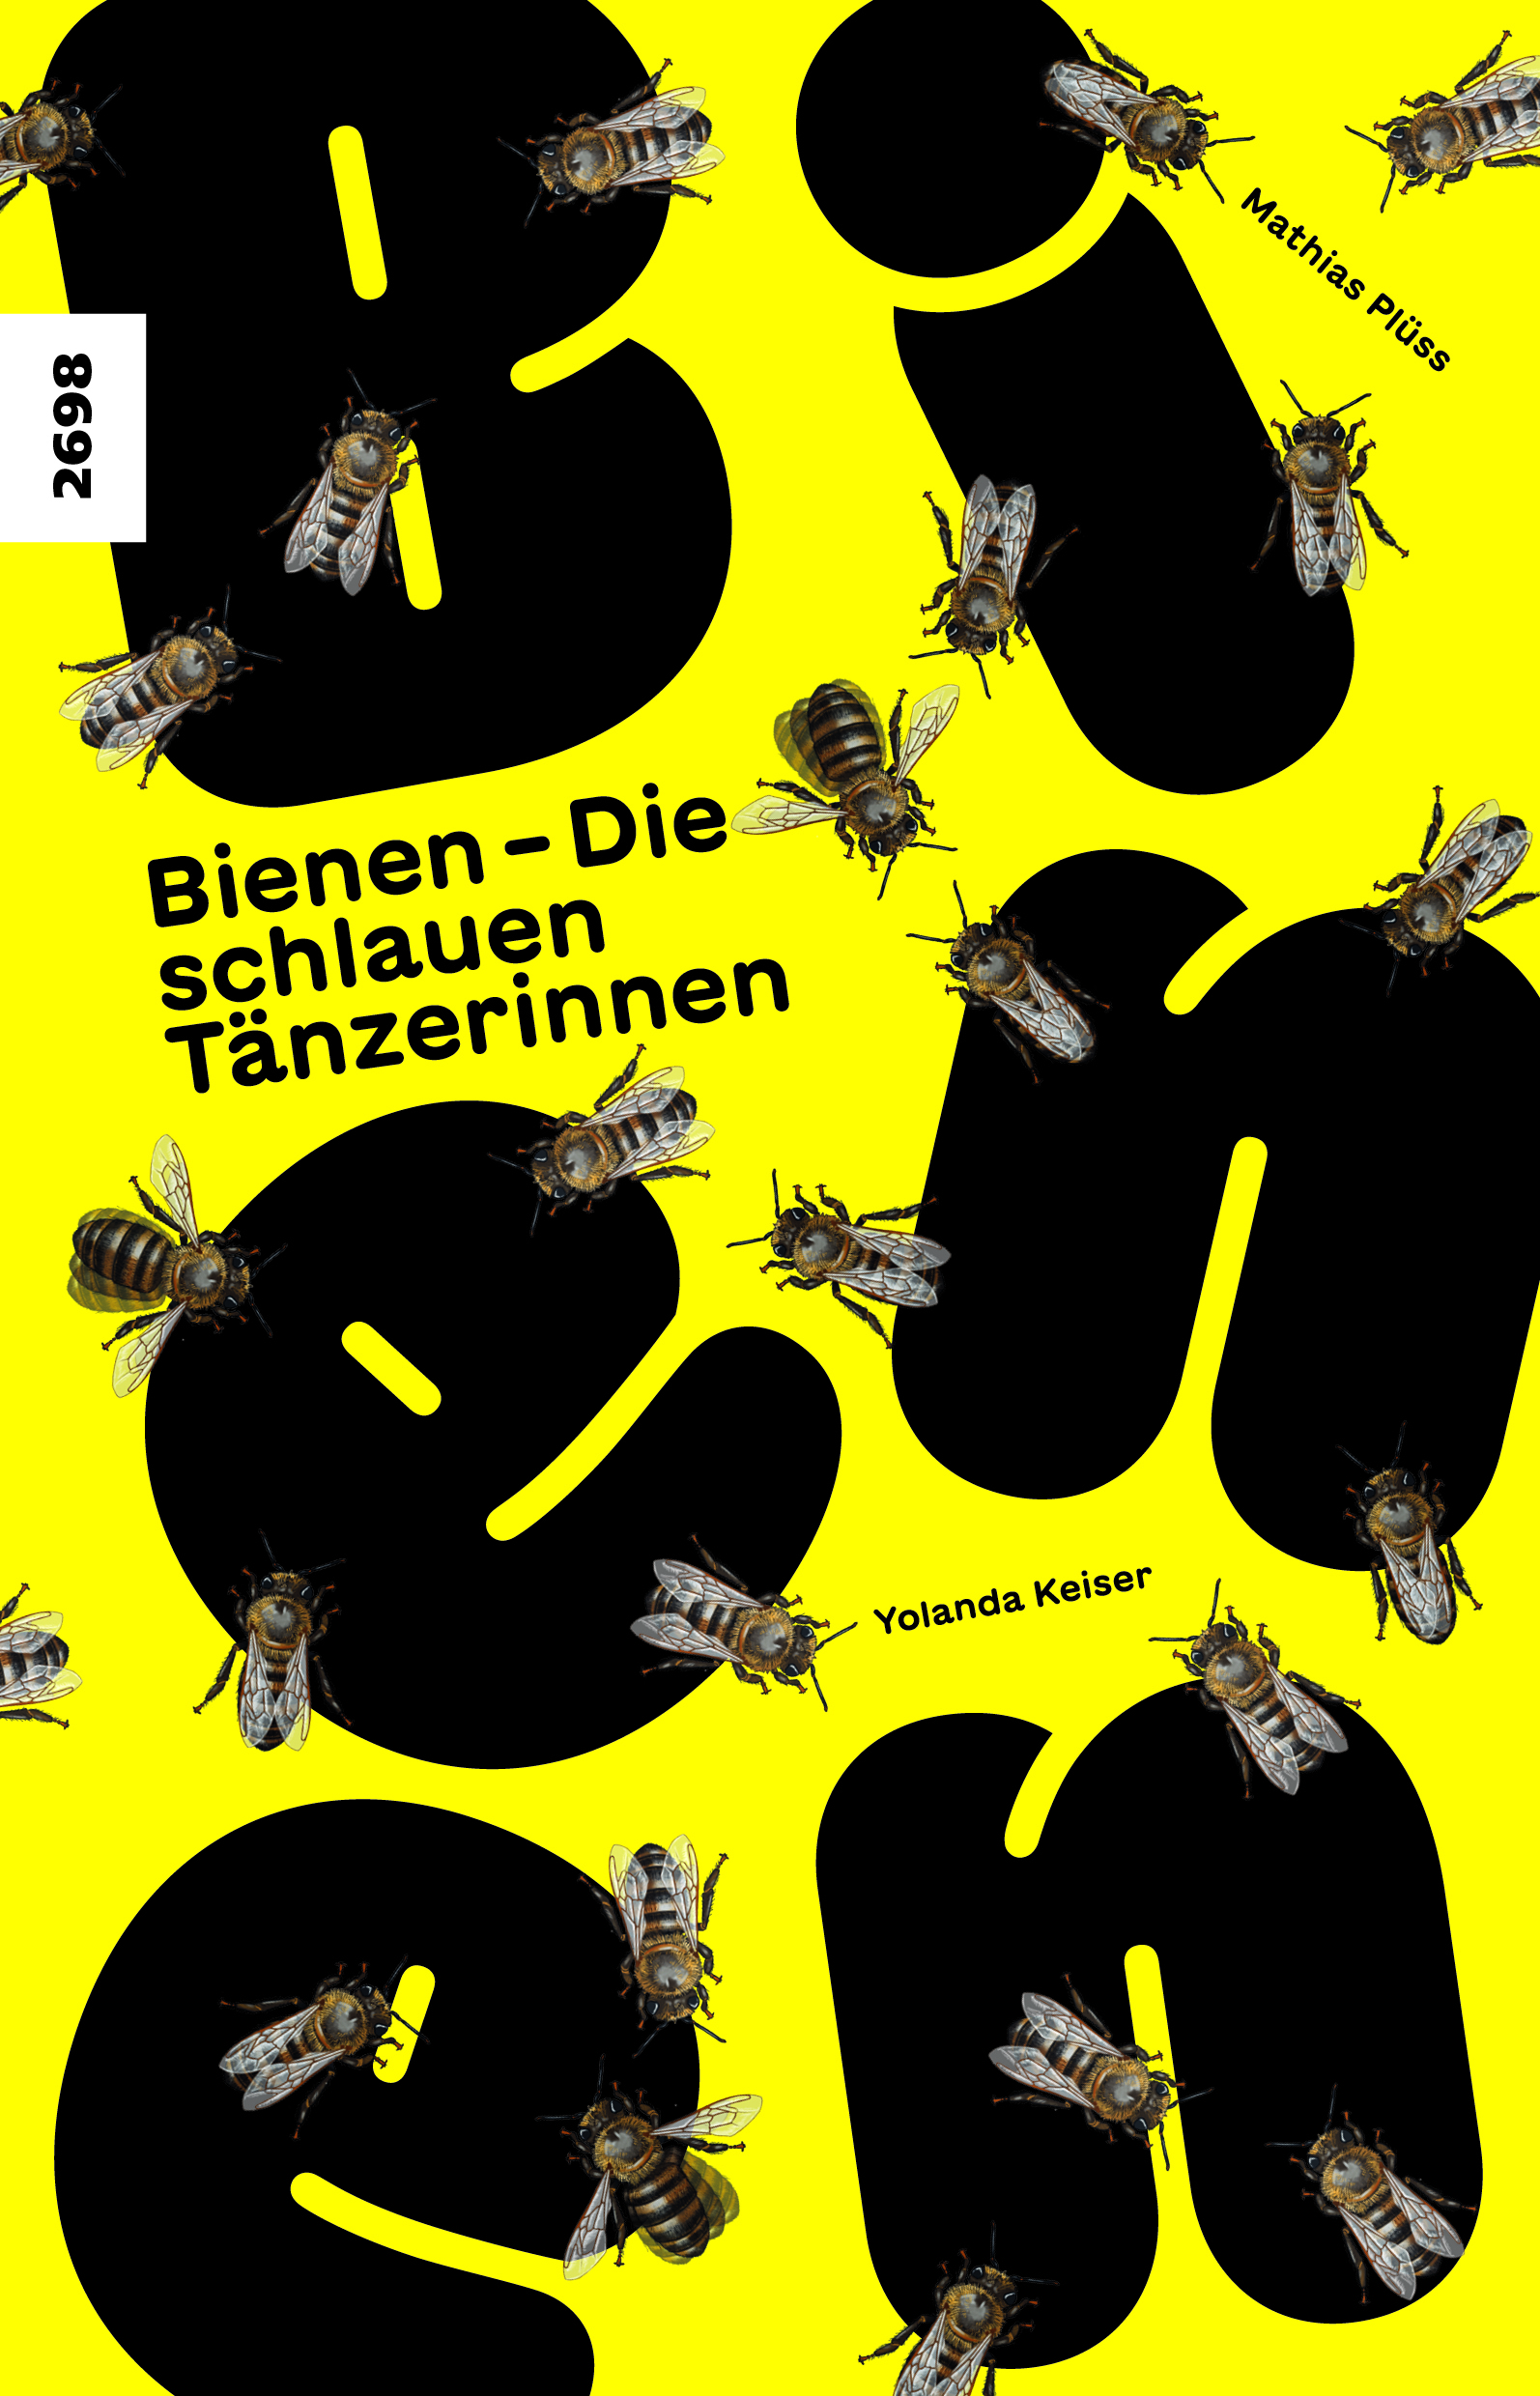 Bienen – Die schlauen Taenzerinnen, ein Sachbuch von Mathias Pluess, Illustration Yolanda Keiser, Fotos Markus Imhoof, SJW Verlag